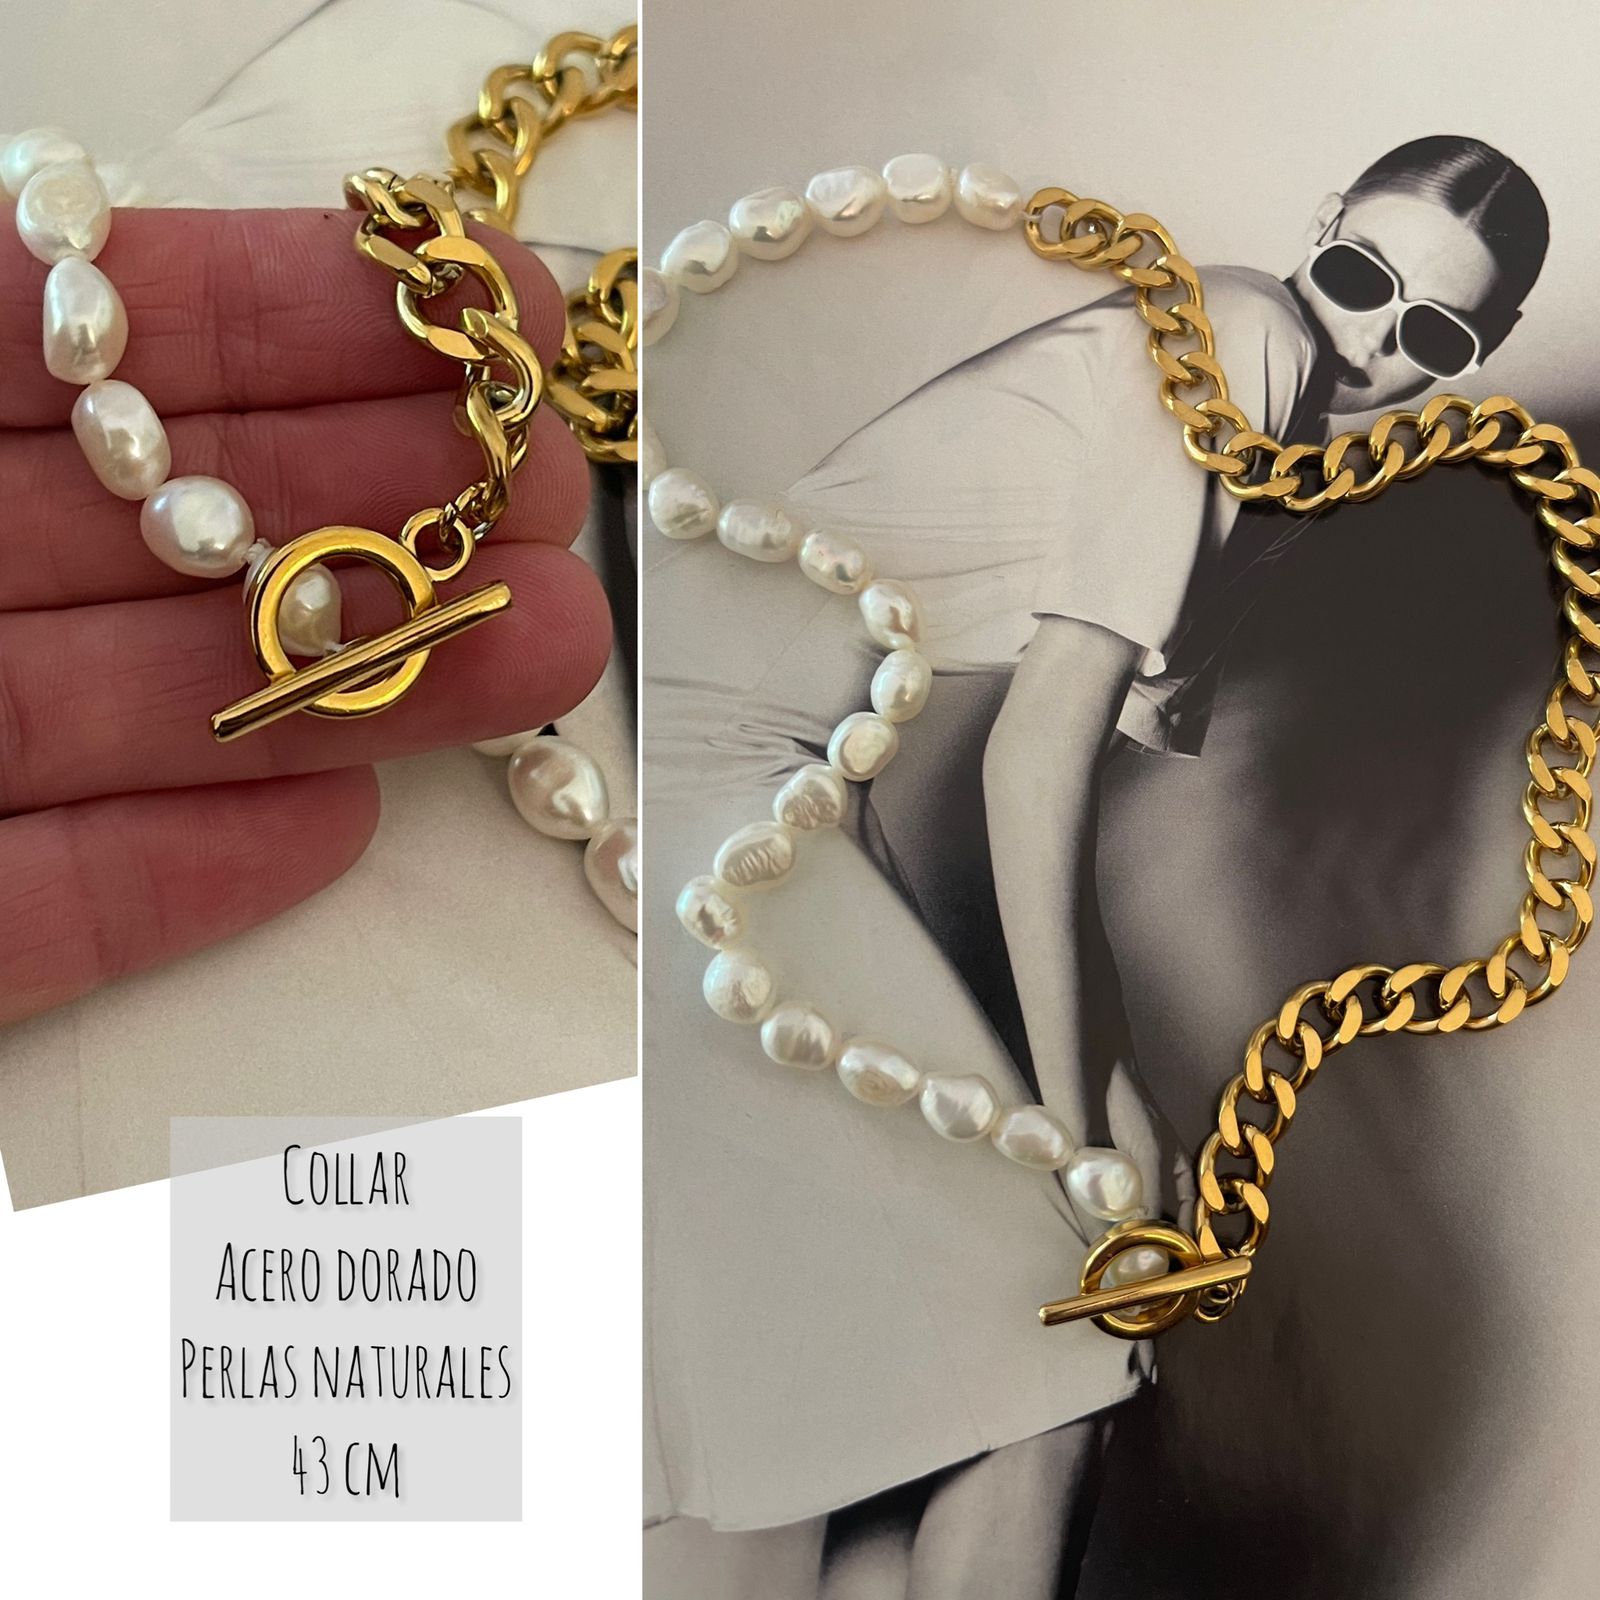 Collar Hippie Chic con cadena tipo cubana de acero inoxidable dorado y perlas naturales